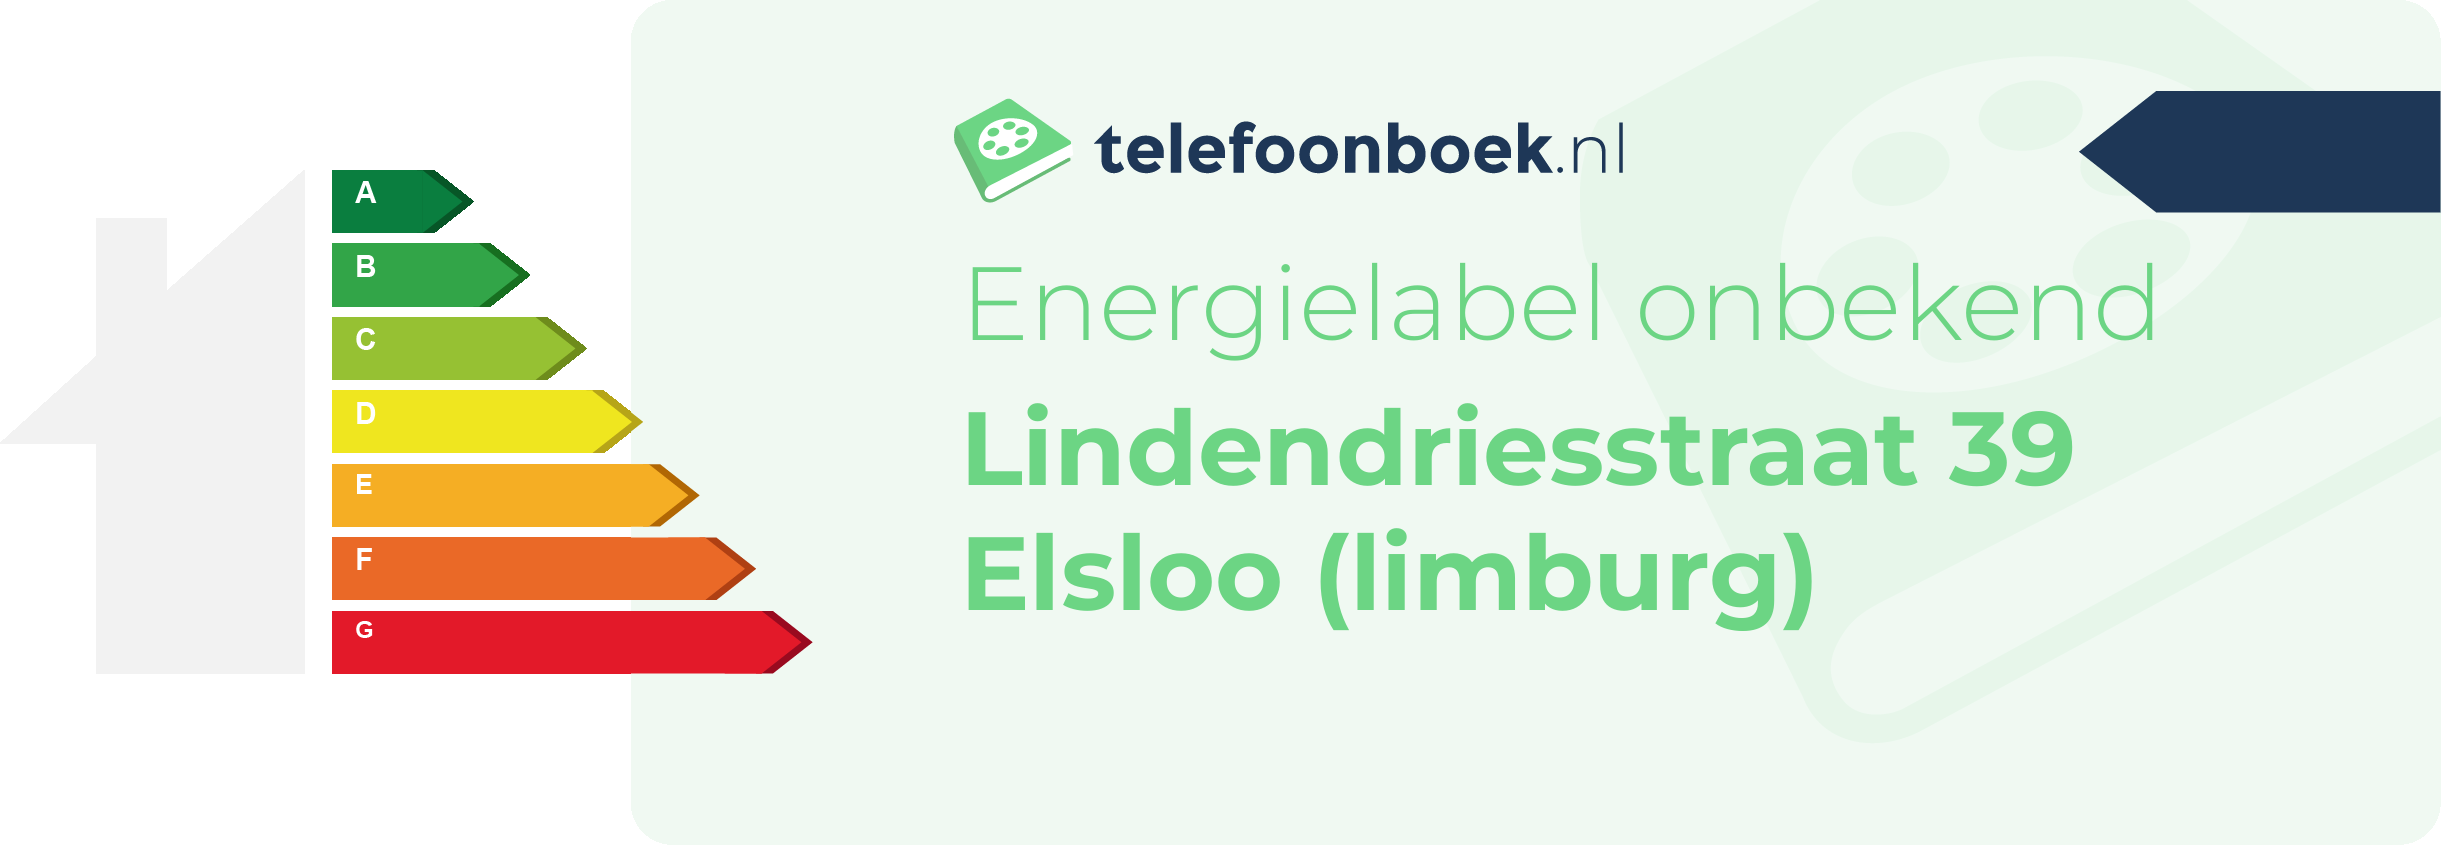 Energielabel Lindendriesstraat 39 Elsloo (Limburg)